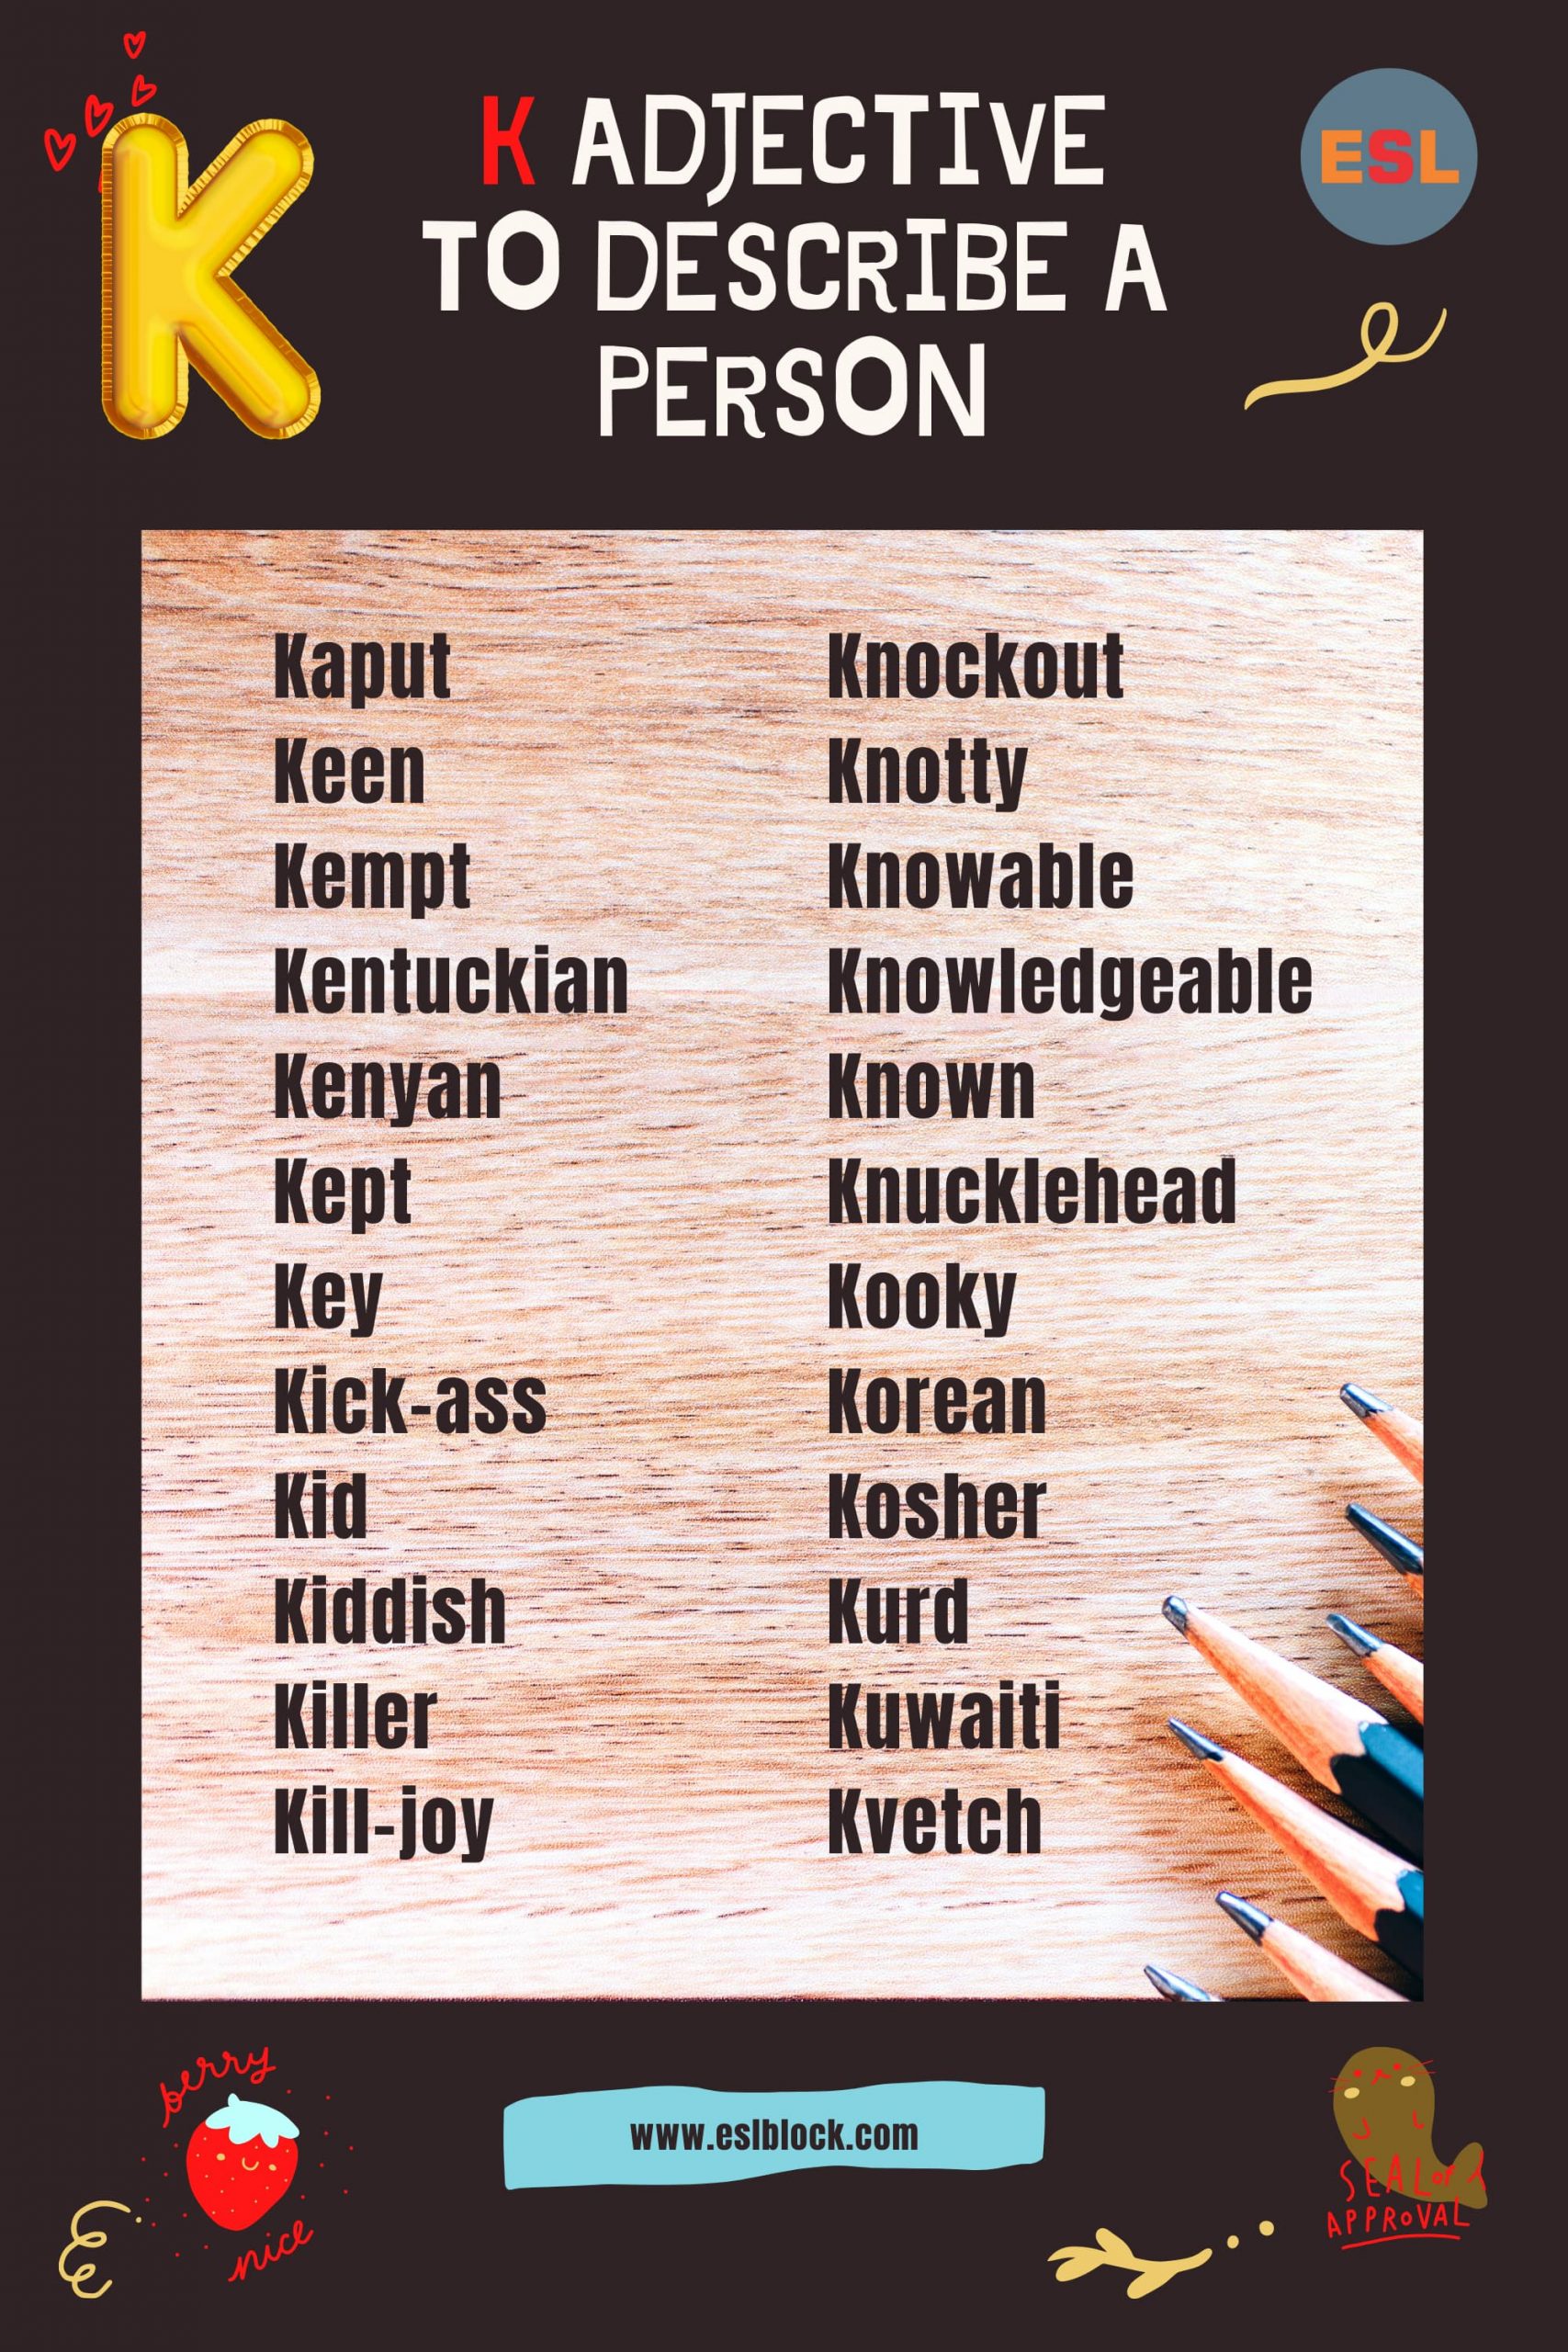 A-Z Adjectives, Adjective Words, Adjectives, Adjectives to describe a person, K Adjectives to Describe a Person, K Positive Adjectives to Describe a Person, K Words, Positive Adjectives to Describe a Person, Vocabulary, Words That Describe a Person